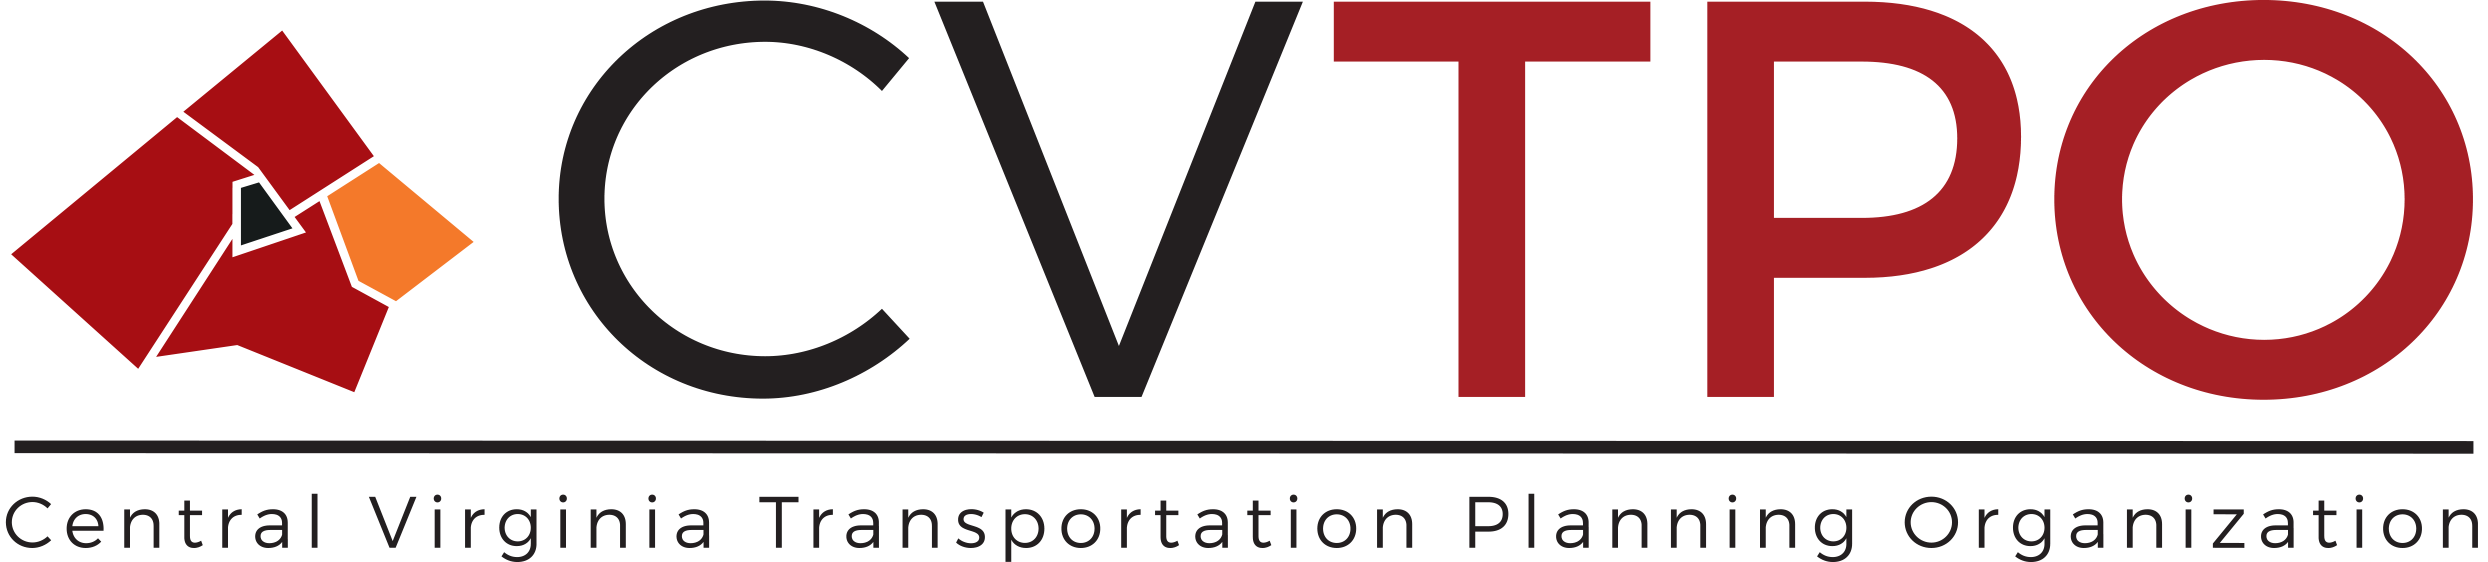 CVTPO Central va planning logo